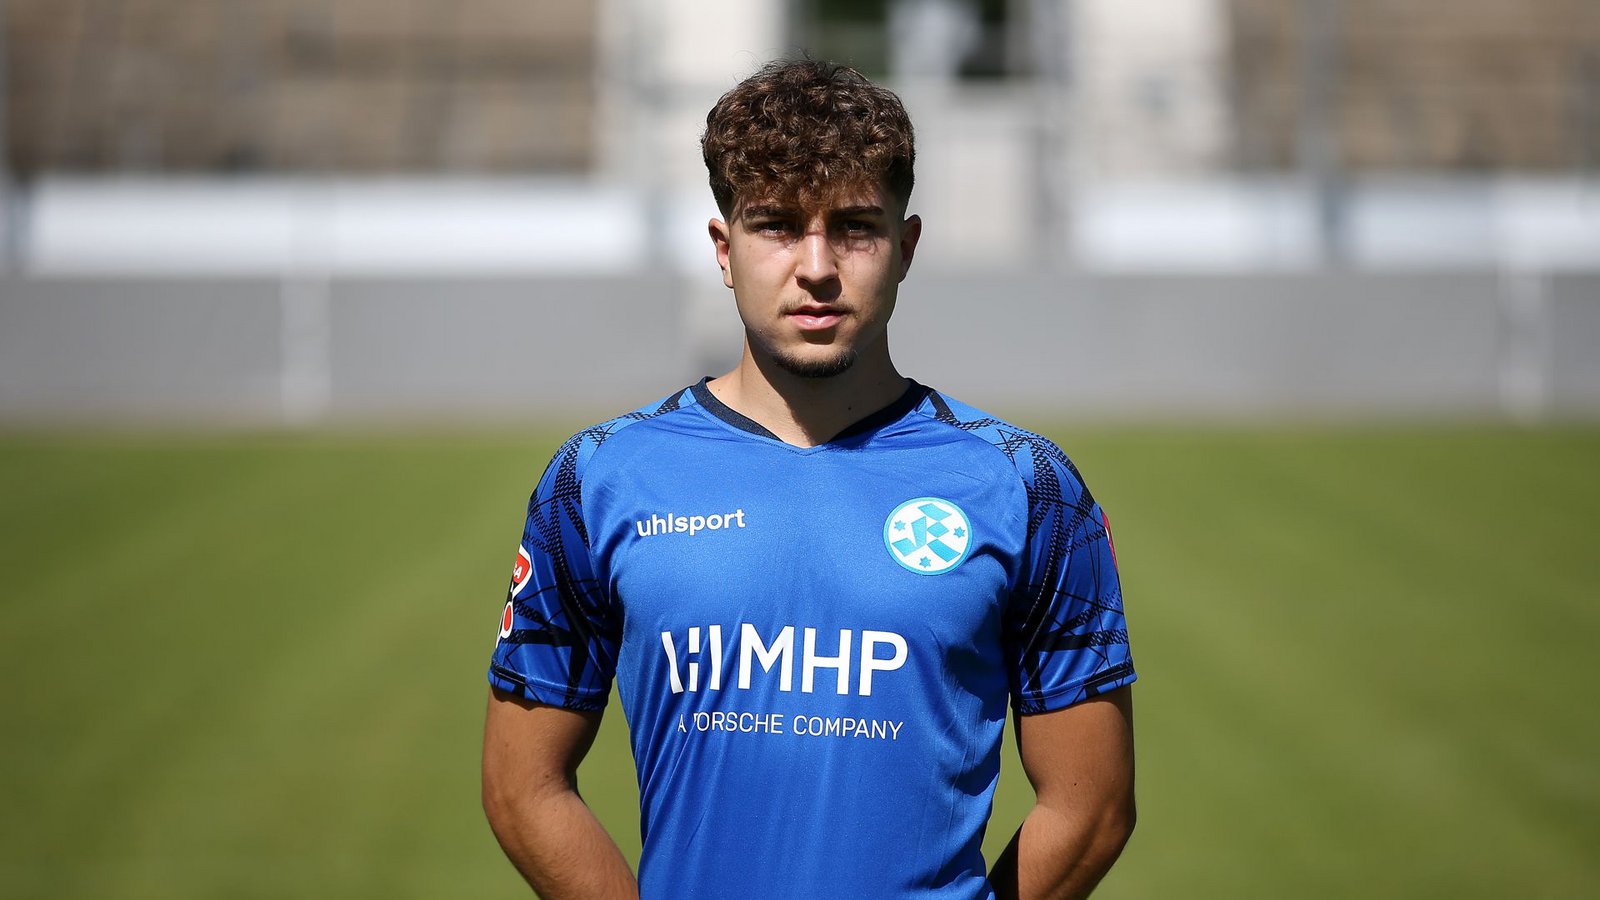 Mittelfeldspieler Torben Hohloch (19) geht in sein erstes aktives Jahr.Foto: Pressefoto Baumann/Alexander Keppler